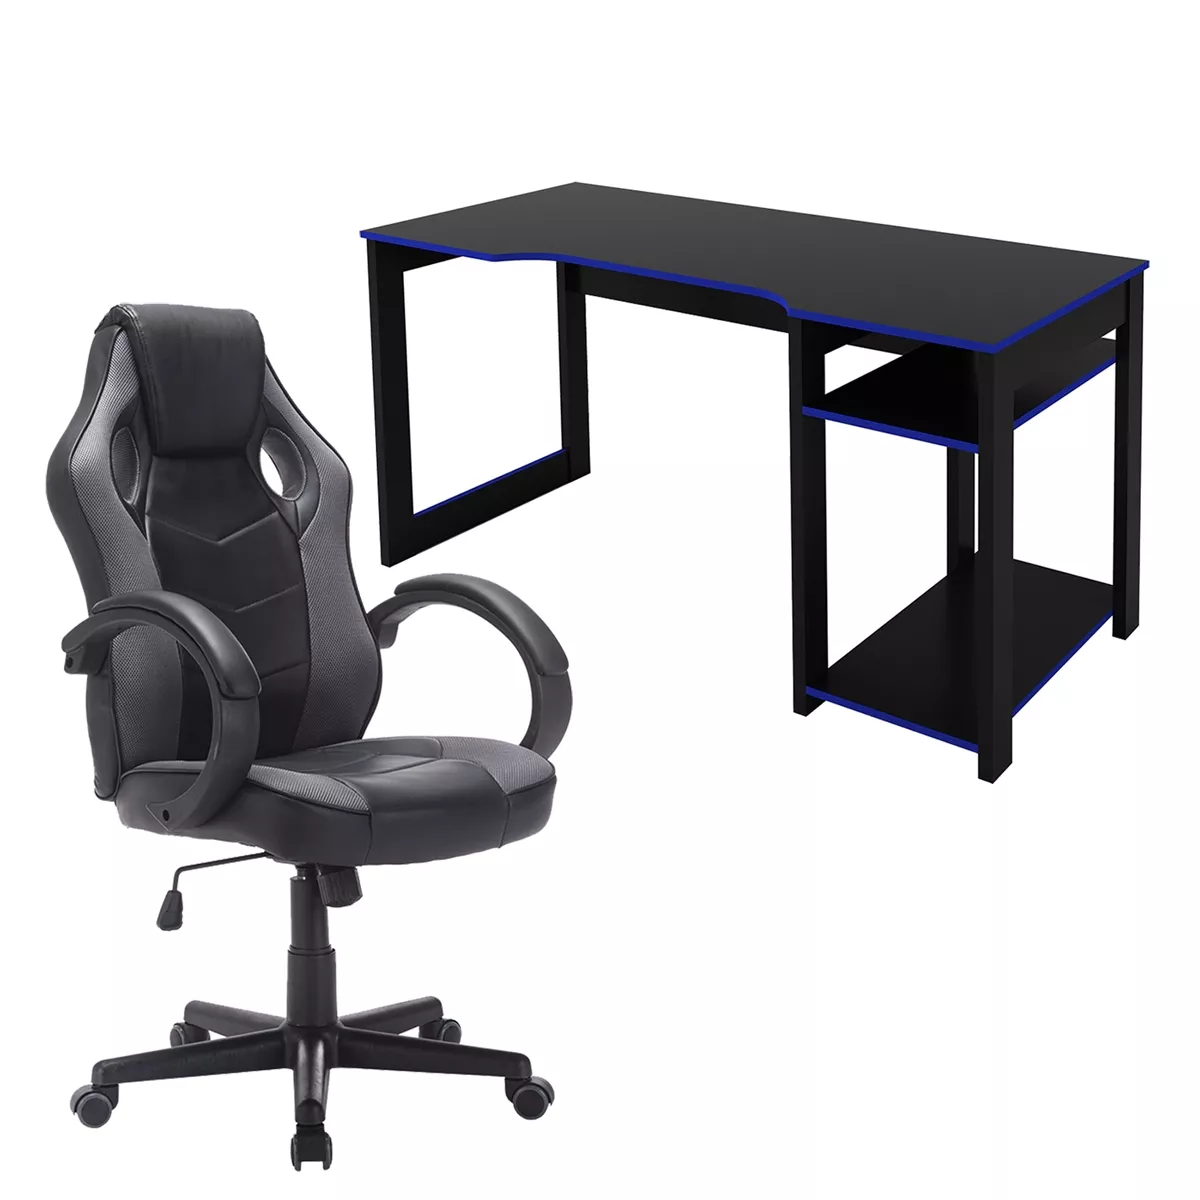 Mesa Computador Tecno Mobili Me4152 Preta/Azul + Cadeira Gamer Trevall